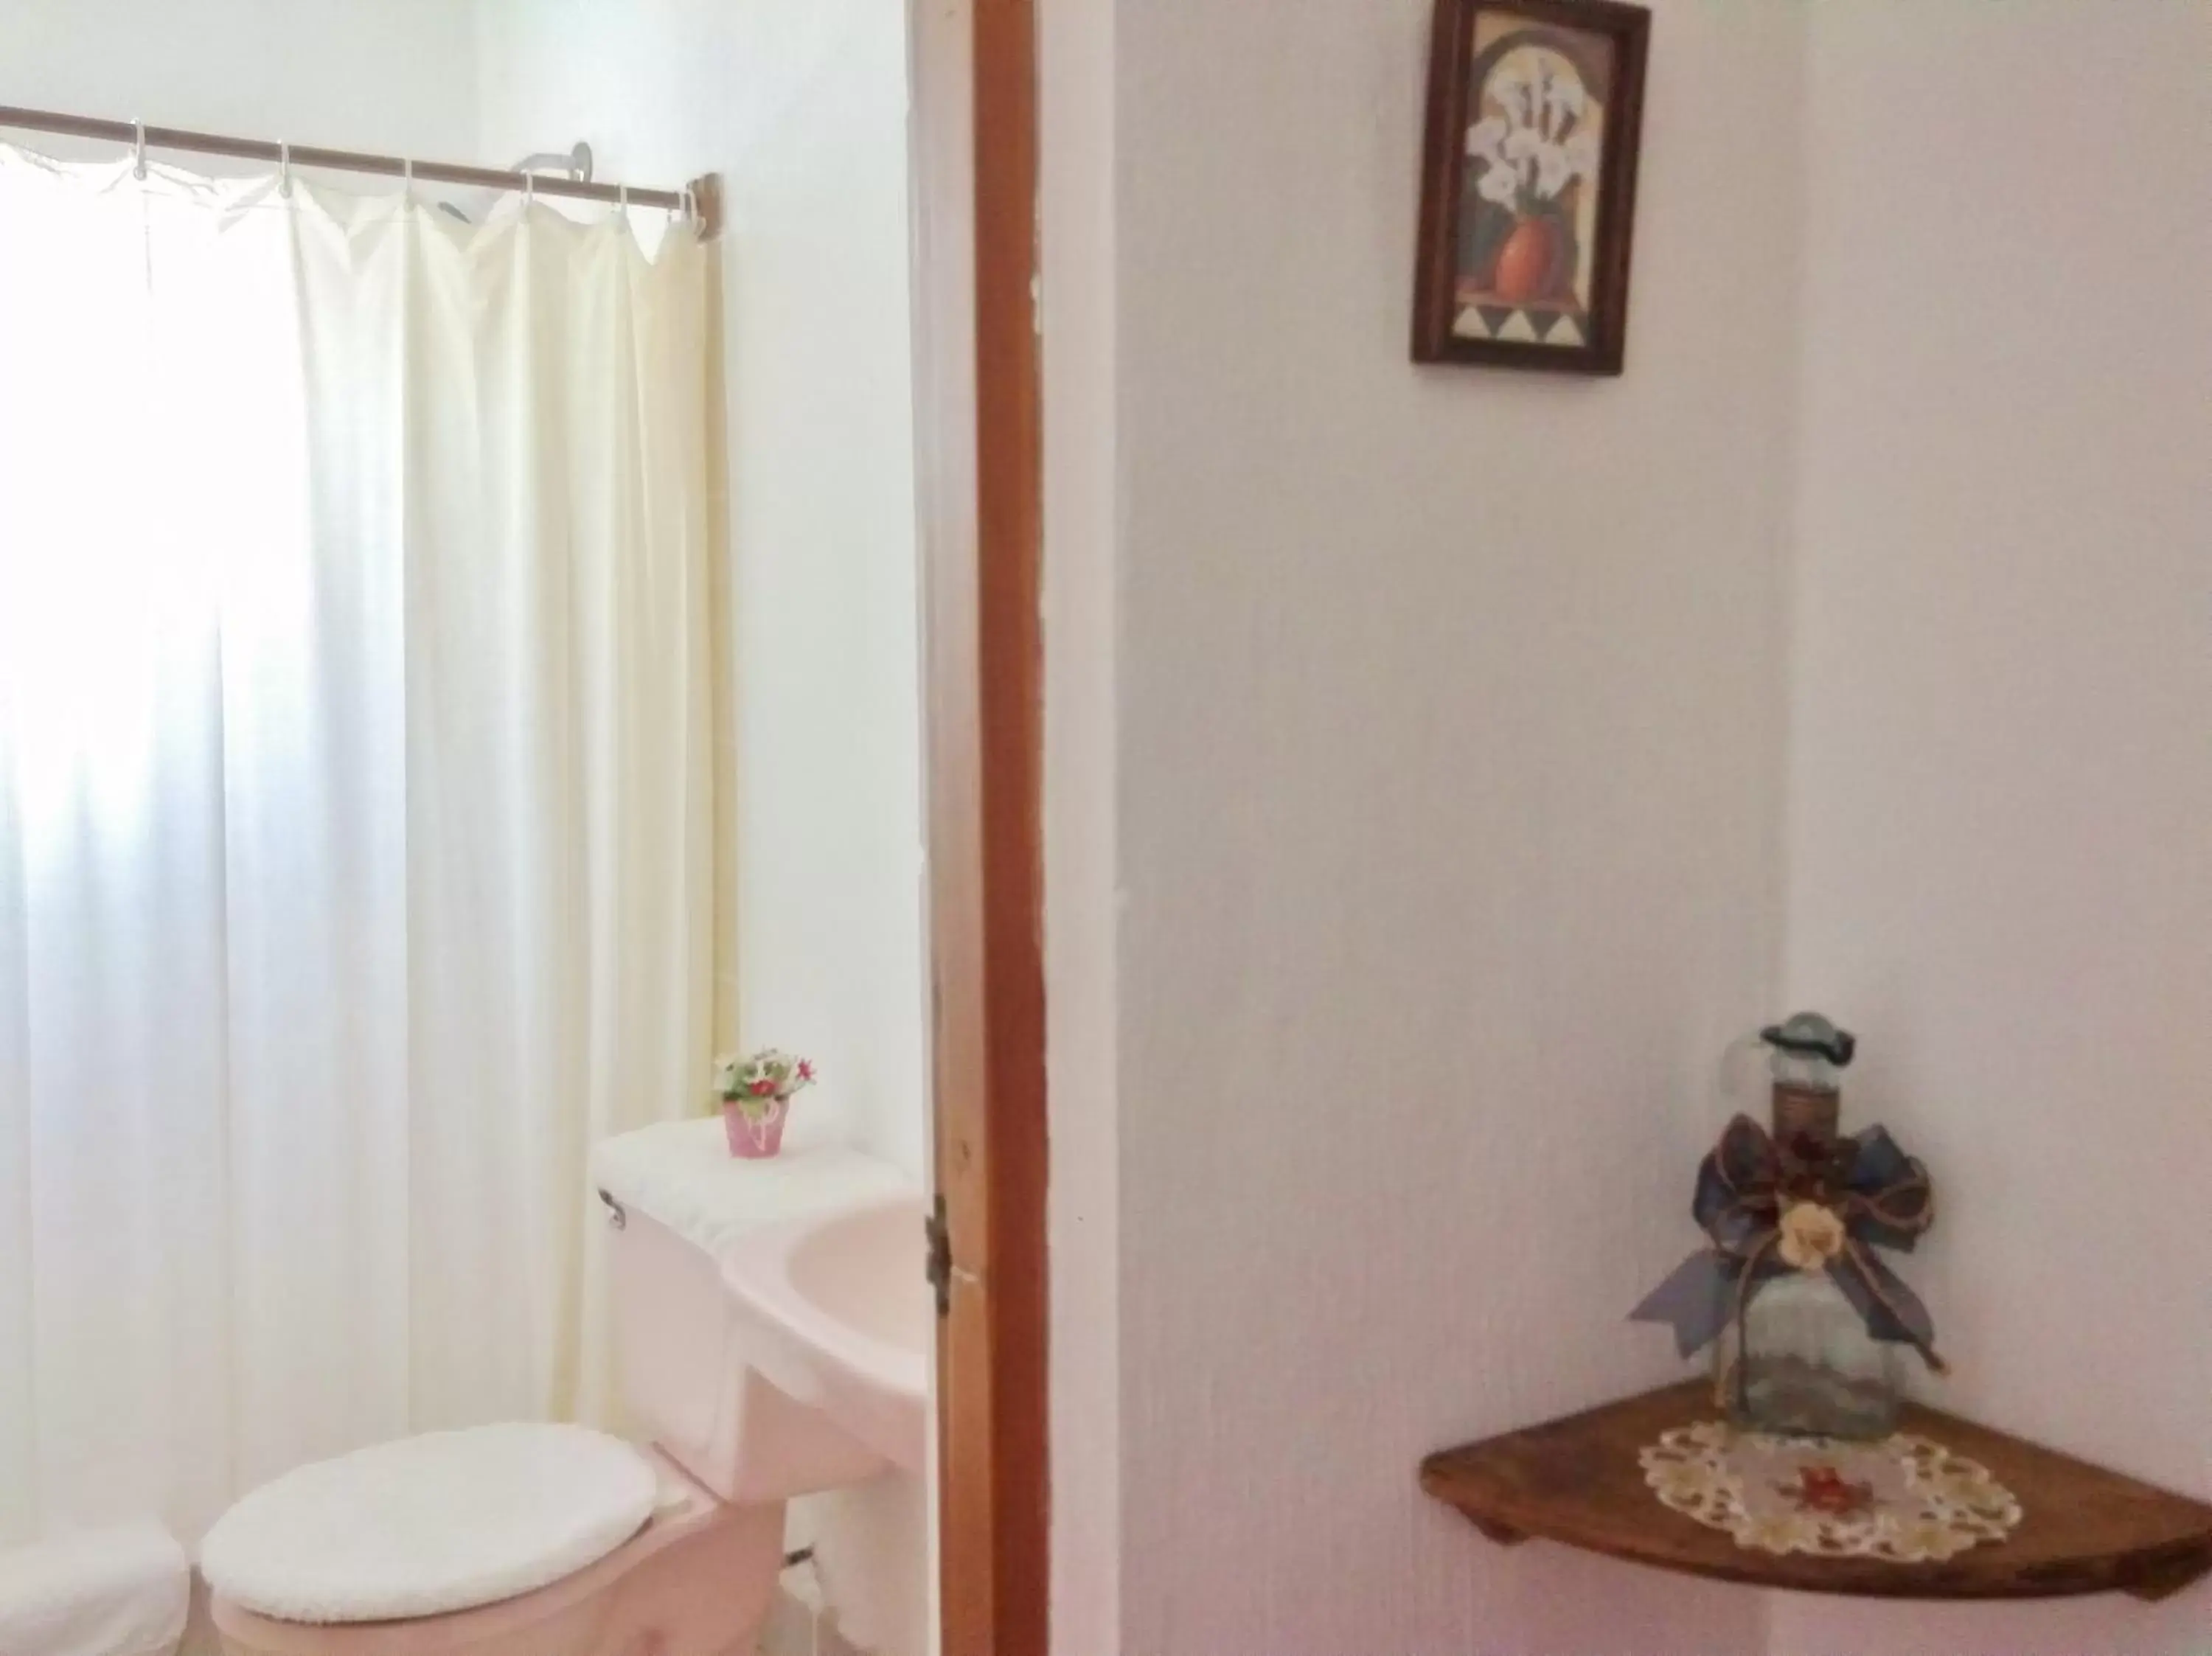 Area and facilities, Bathroom in Los Caracoles Bed & Breakfast